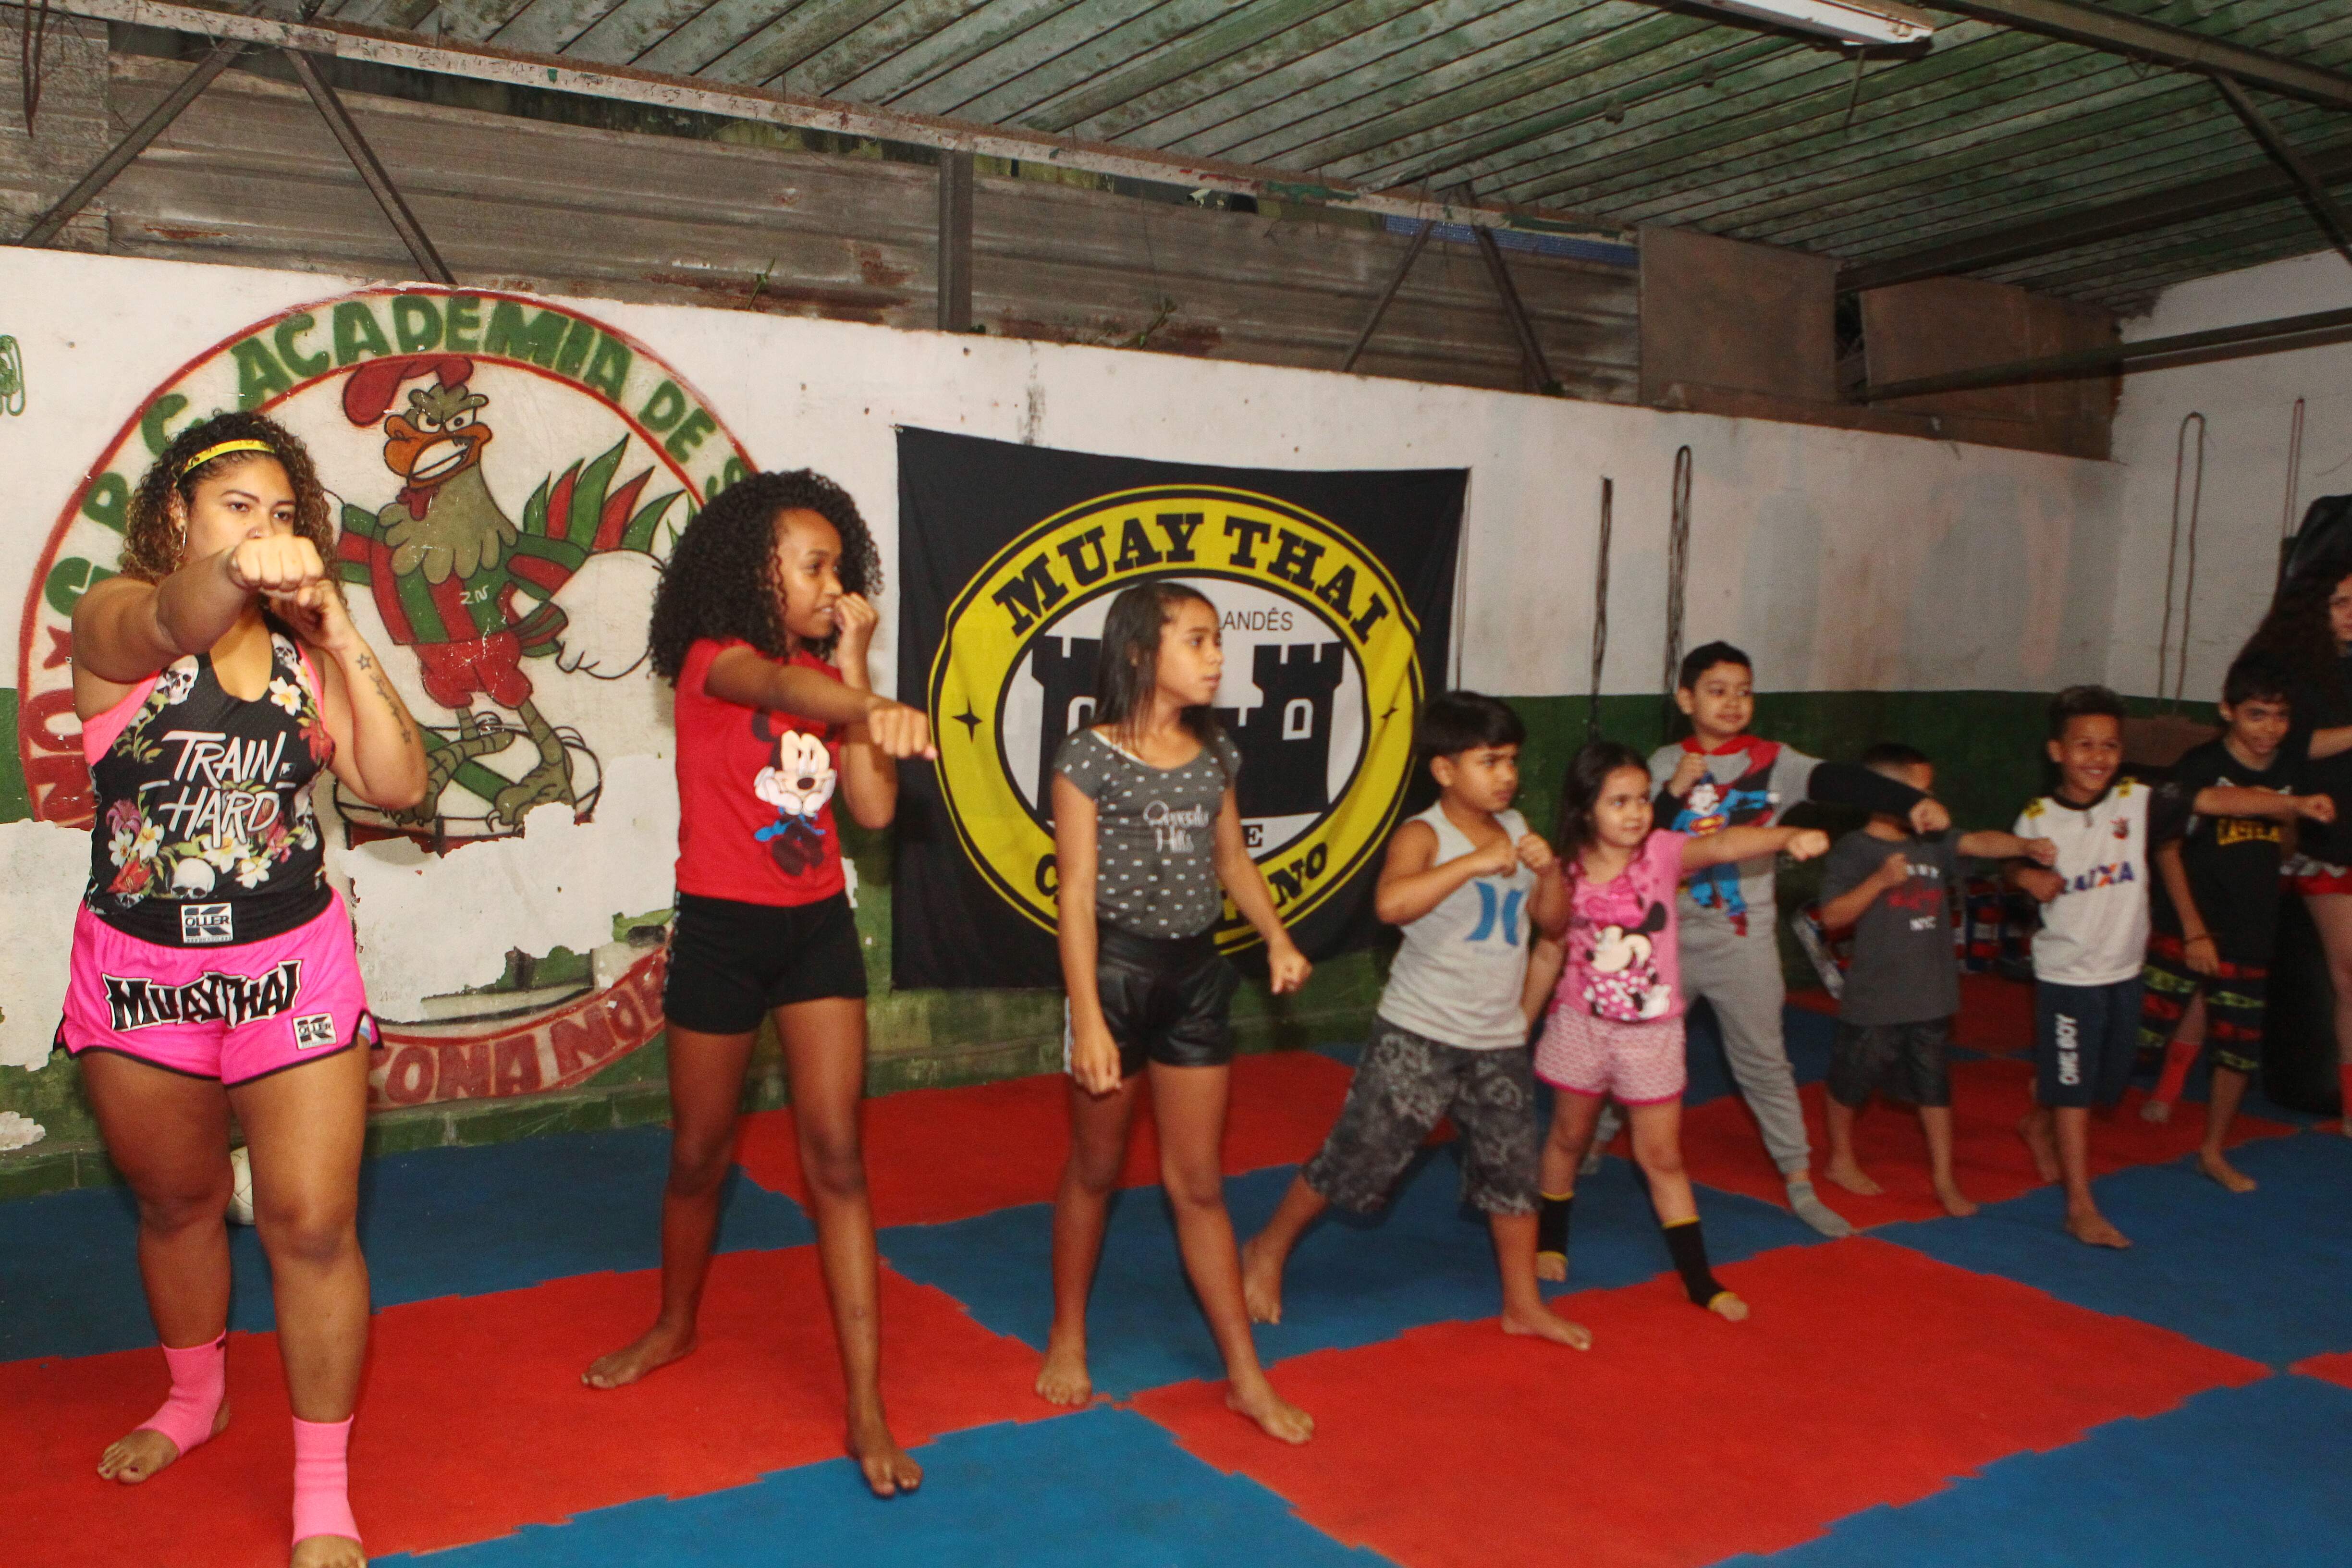 Aulas de muay thai ajudam a tirar jovens da rua e a revelar talentos nesse esporte, uma arte marcial